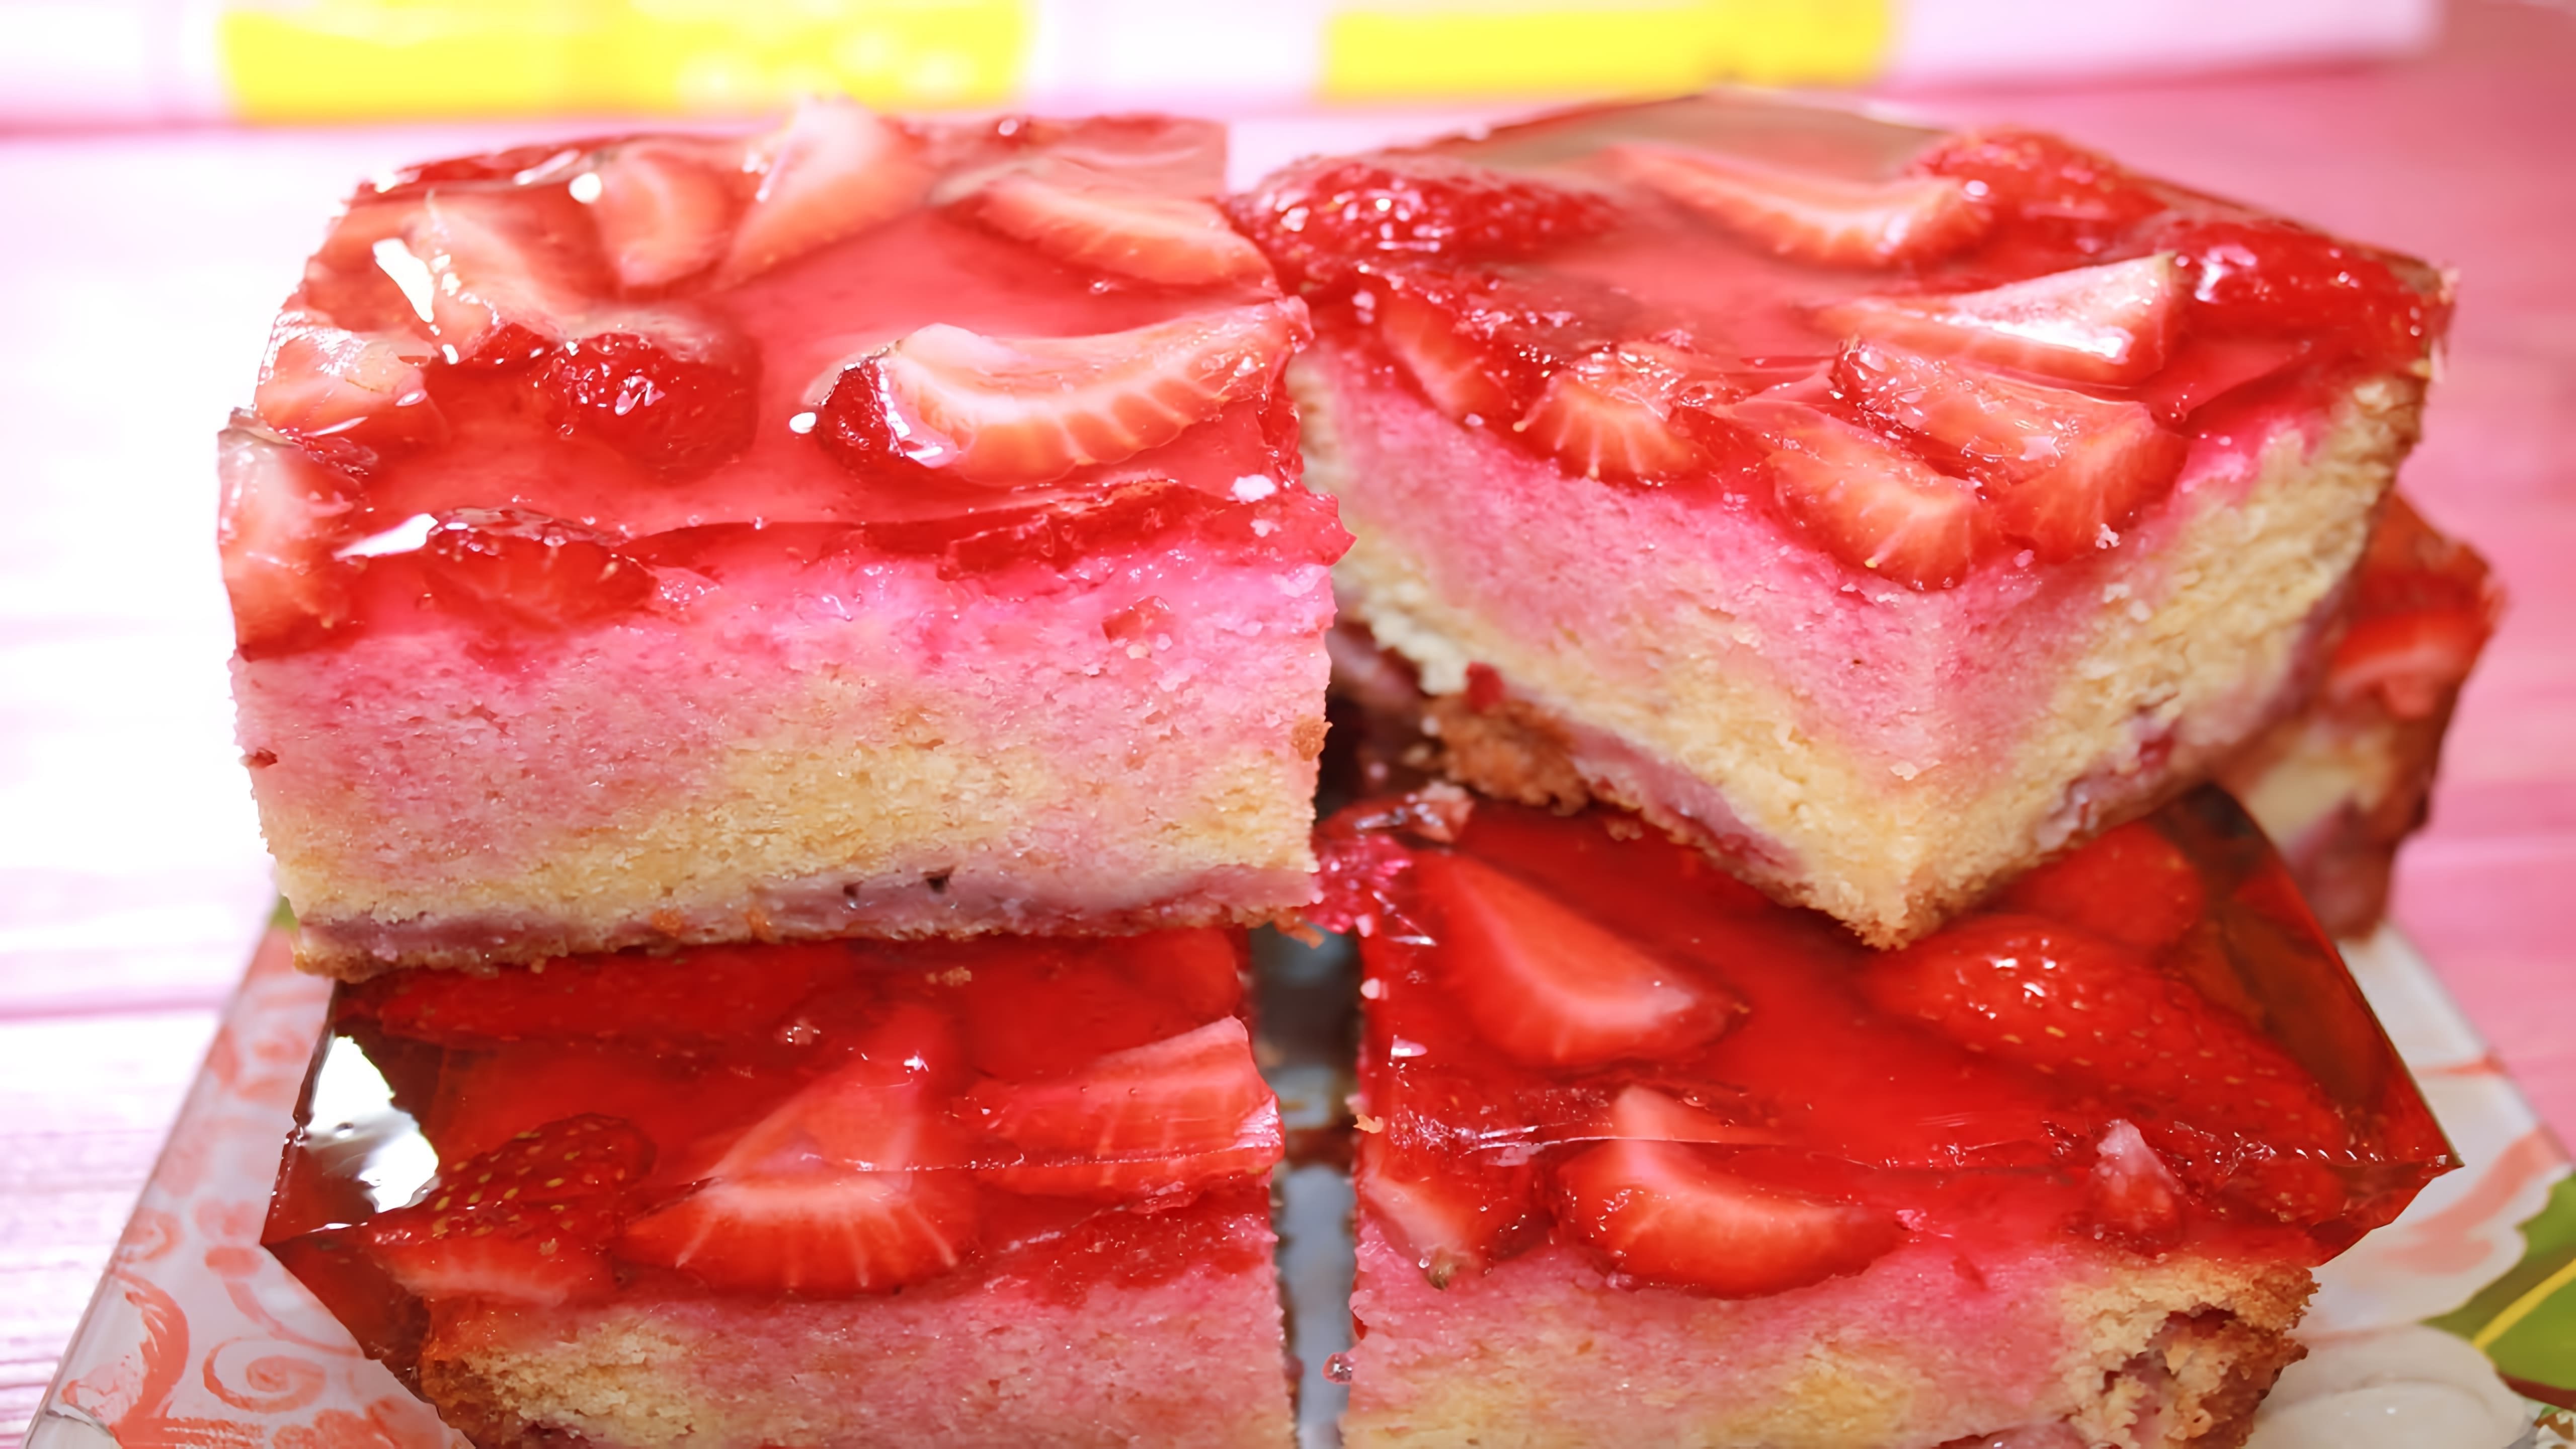 В этом видео демонстрируется рецепт клубничного десерта, который идеально подходит для жаркого лета